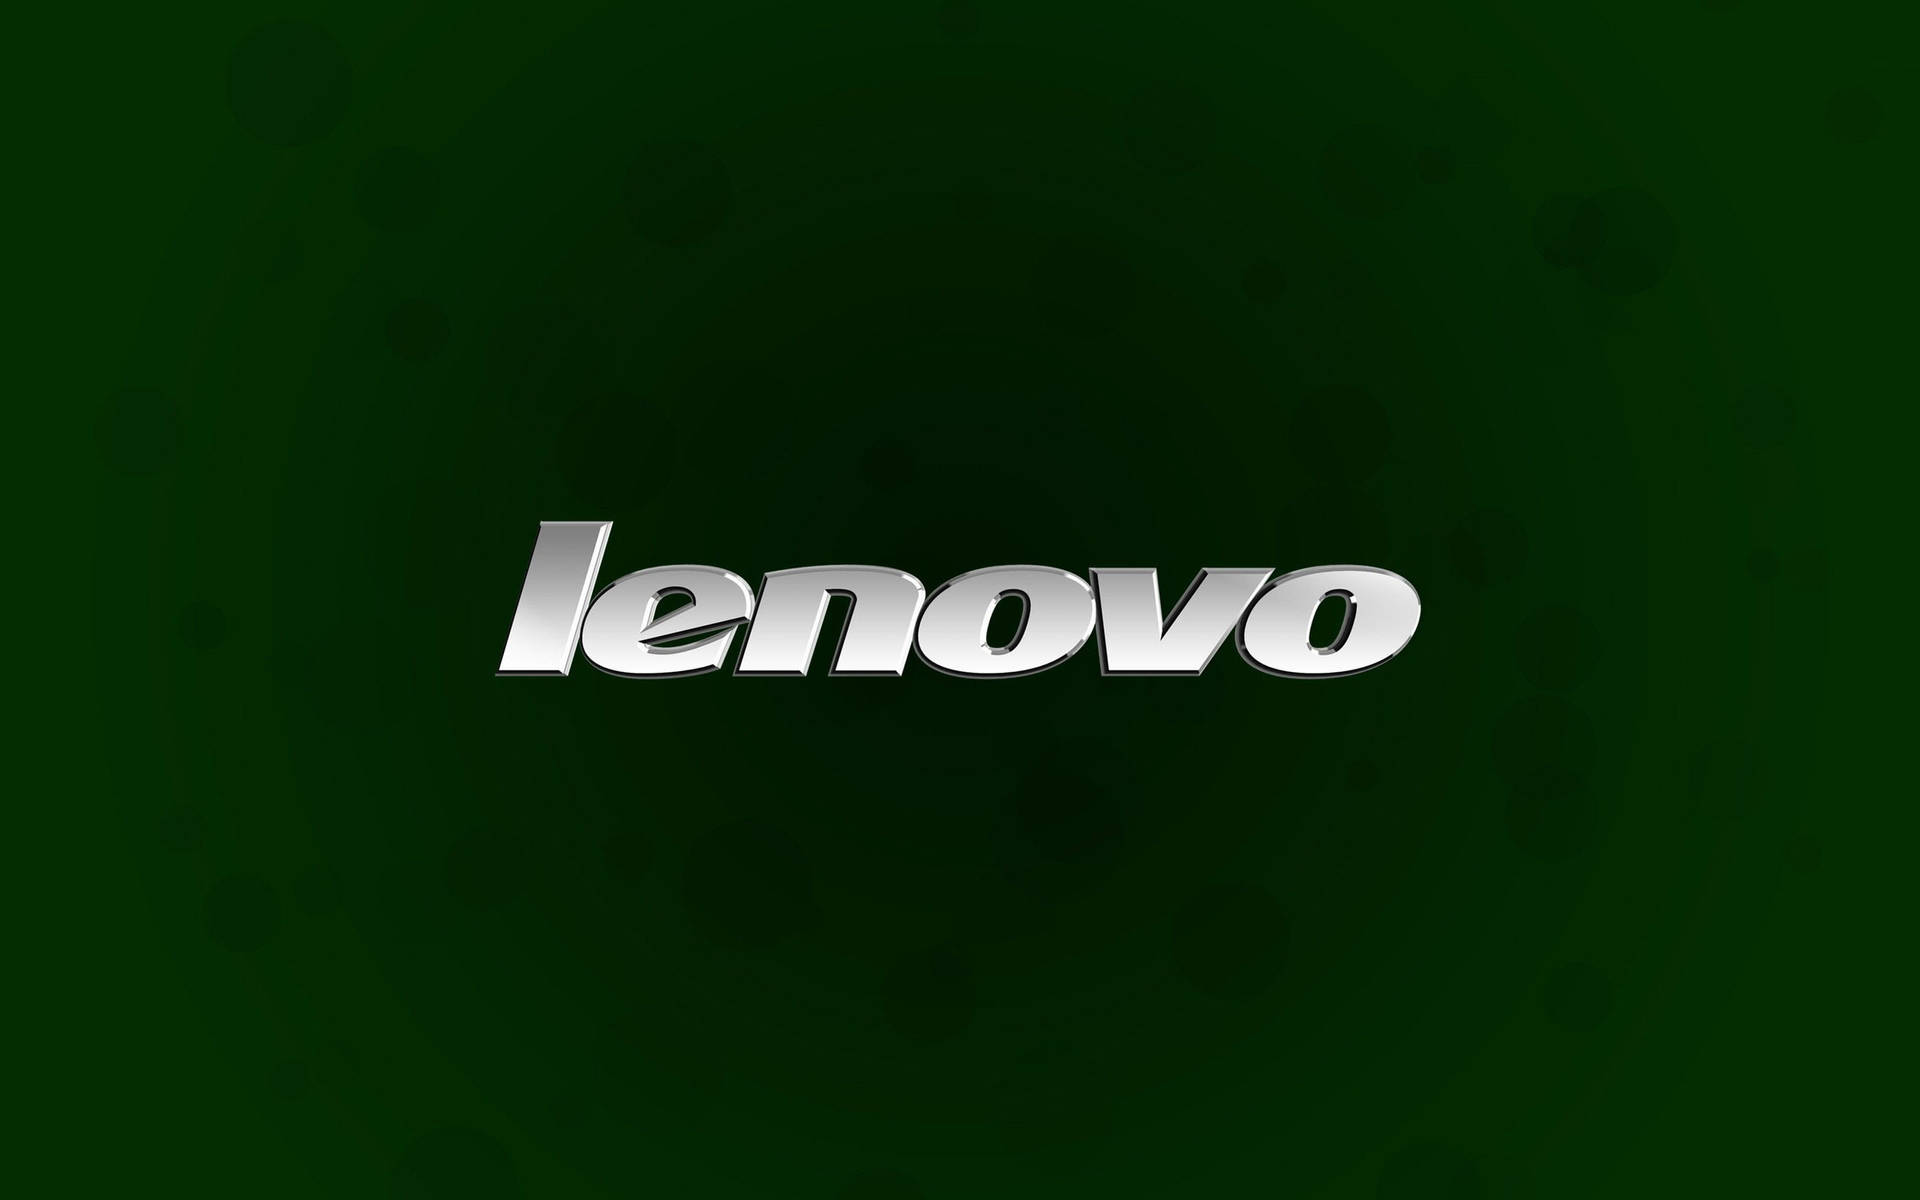 Logooficial De Lenovo En Verde Simple. Fondo de pantalla